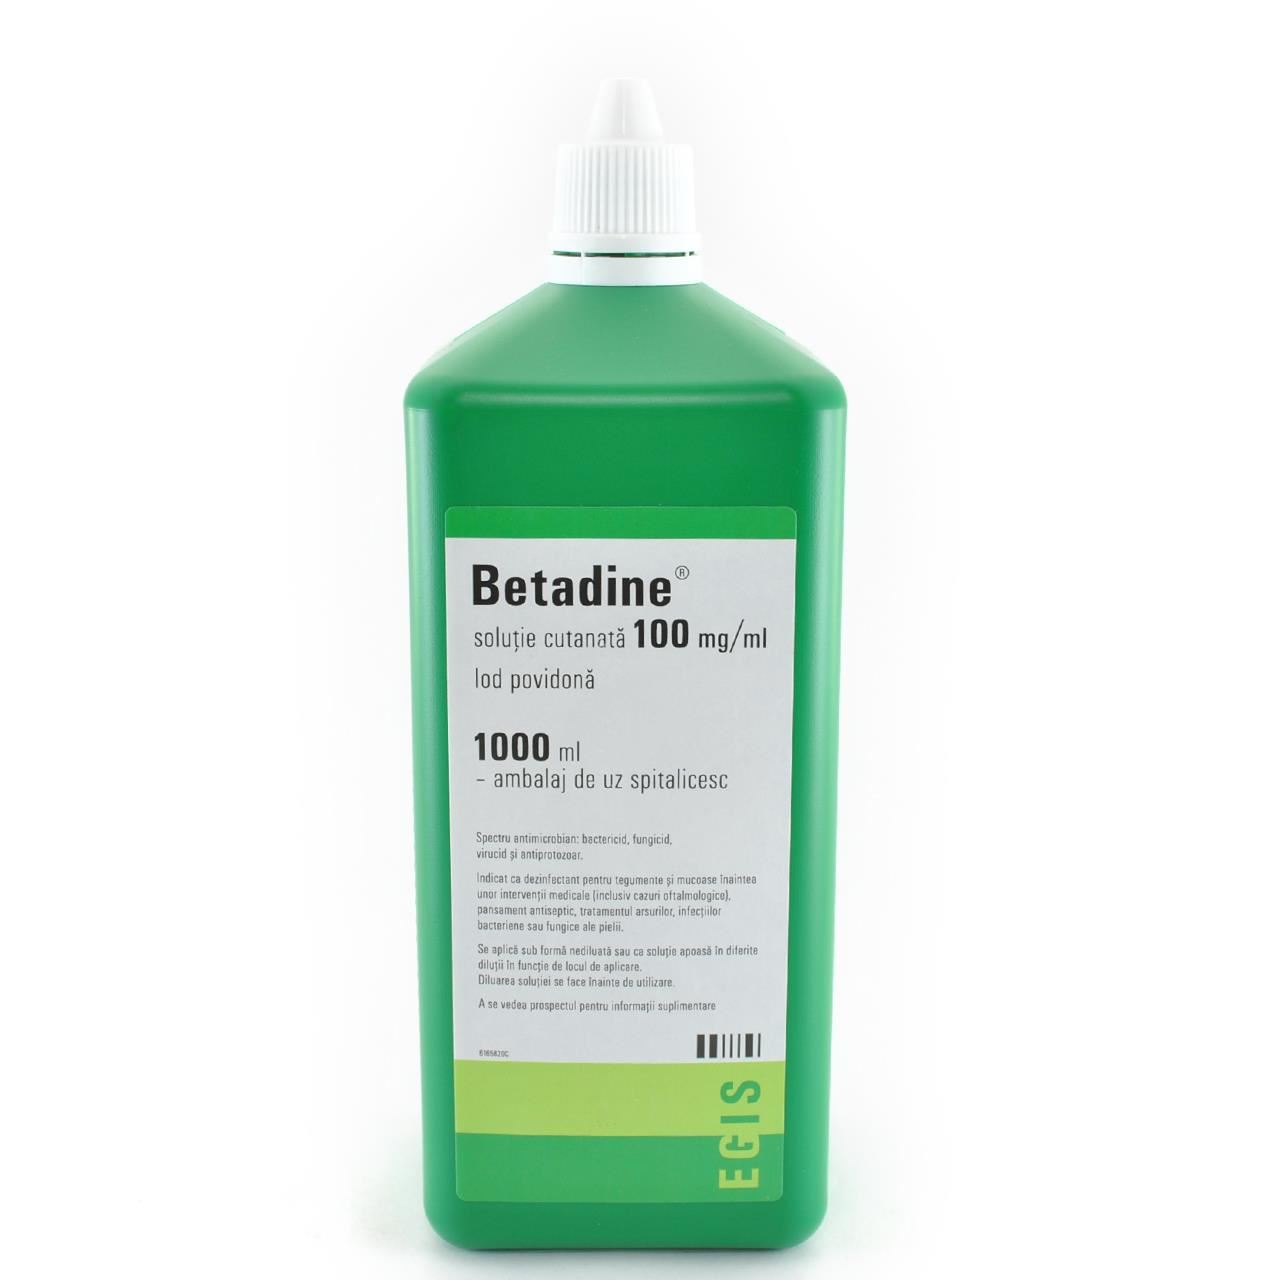 Antiseptice si dezinfectante - Betadine soluție cutanată, 1000ml, Egis, sinapis.ro